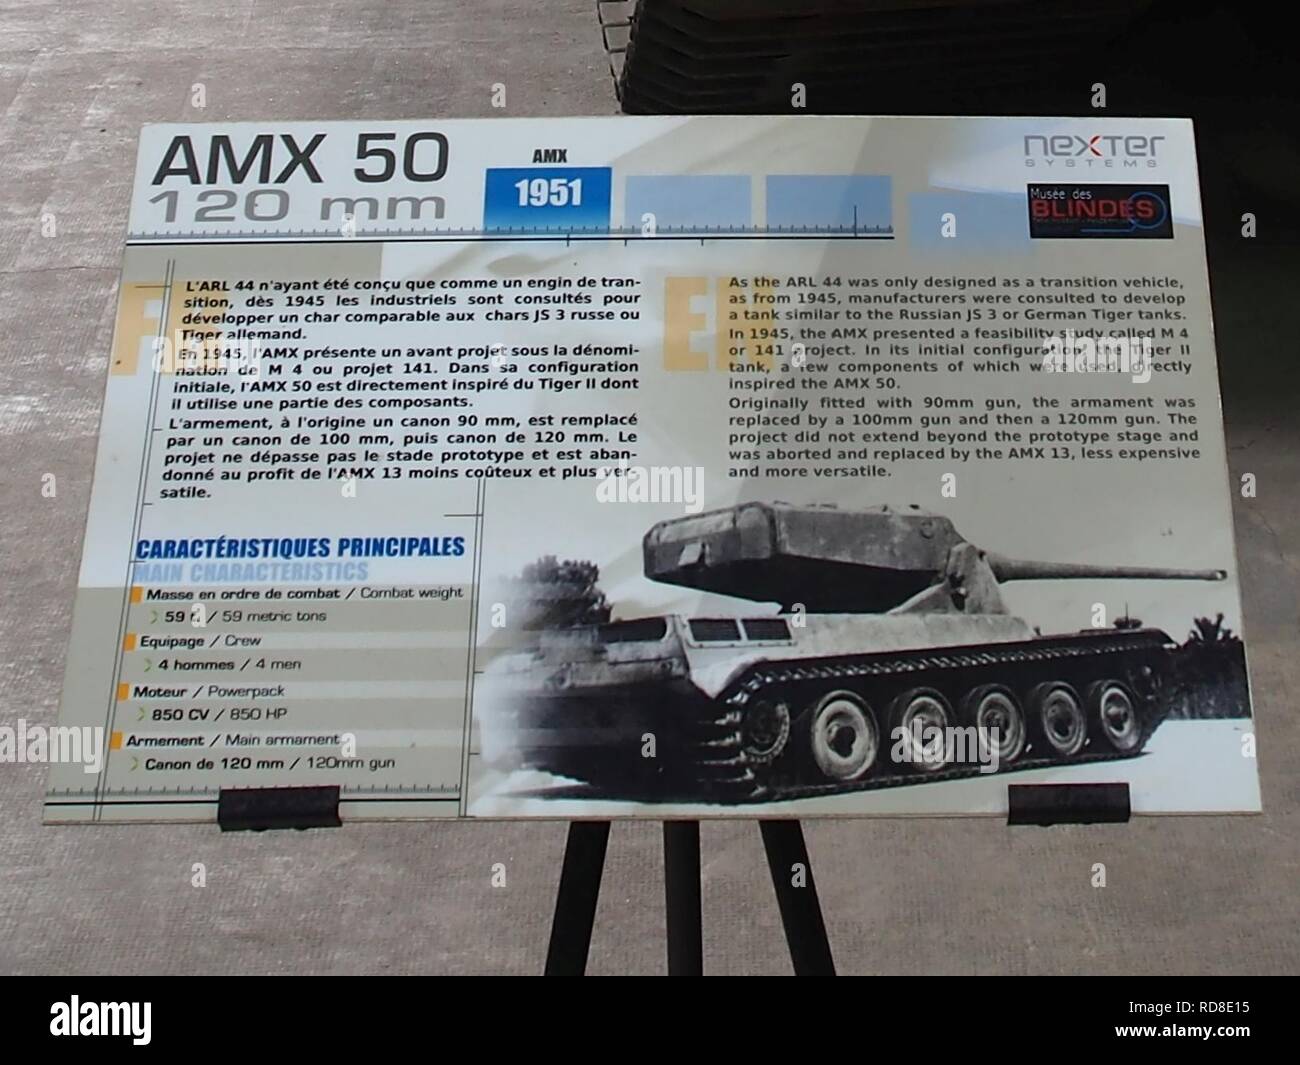 AMX 50 sign in the Musée des Blindés, France. Stock Photo